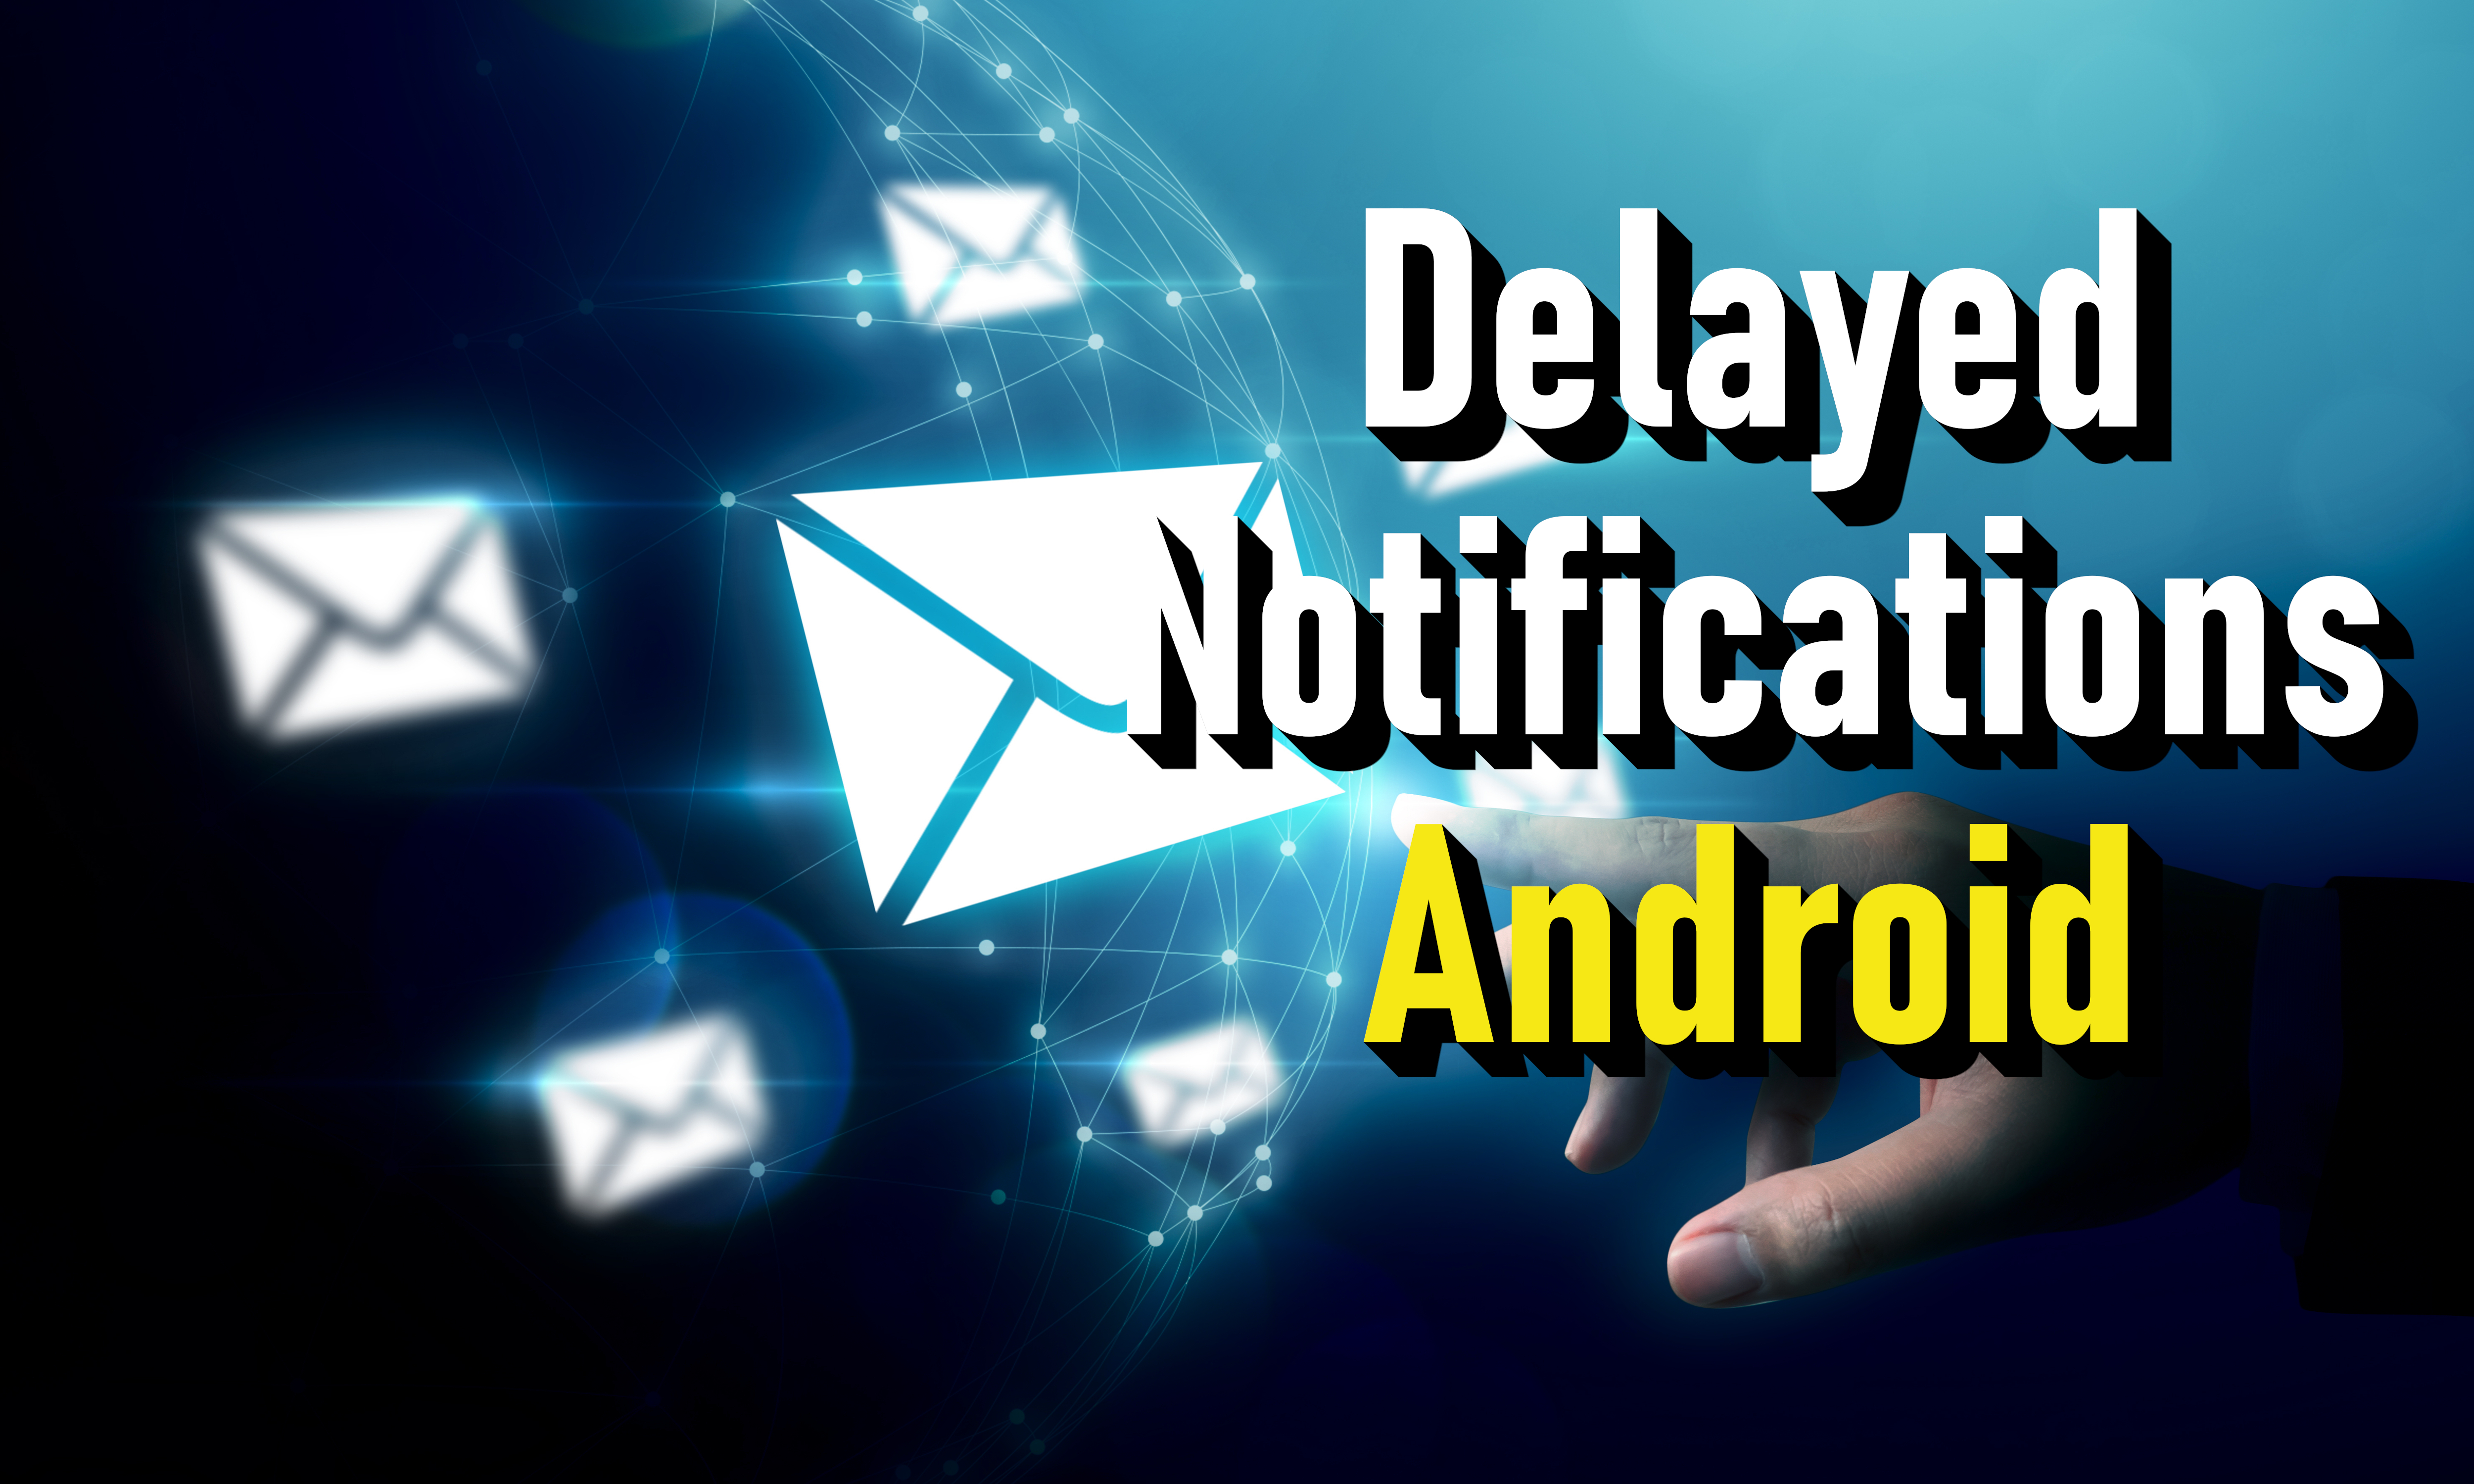 ¿Cómo arreglar las notificaciones retrasadas de Android? - imagen de noticias en imei.info